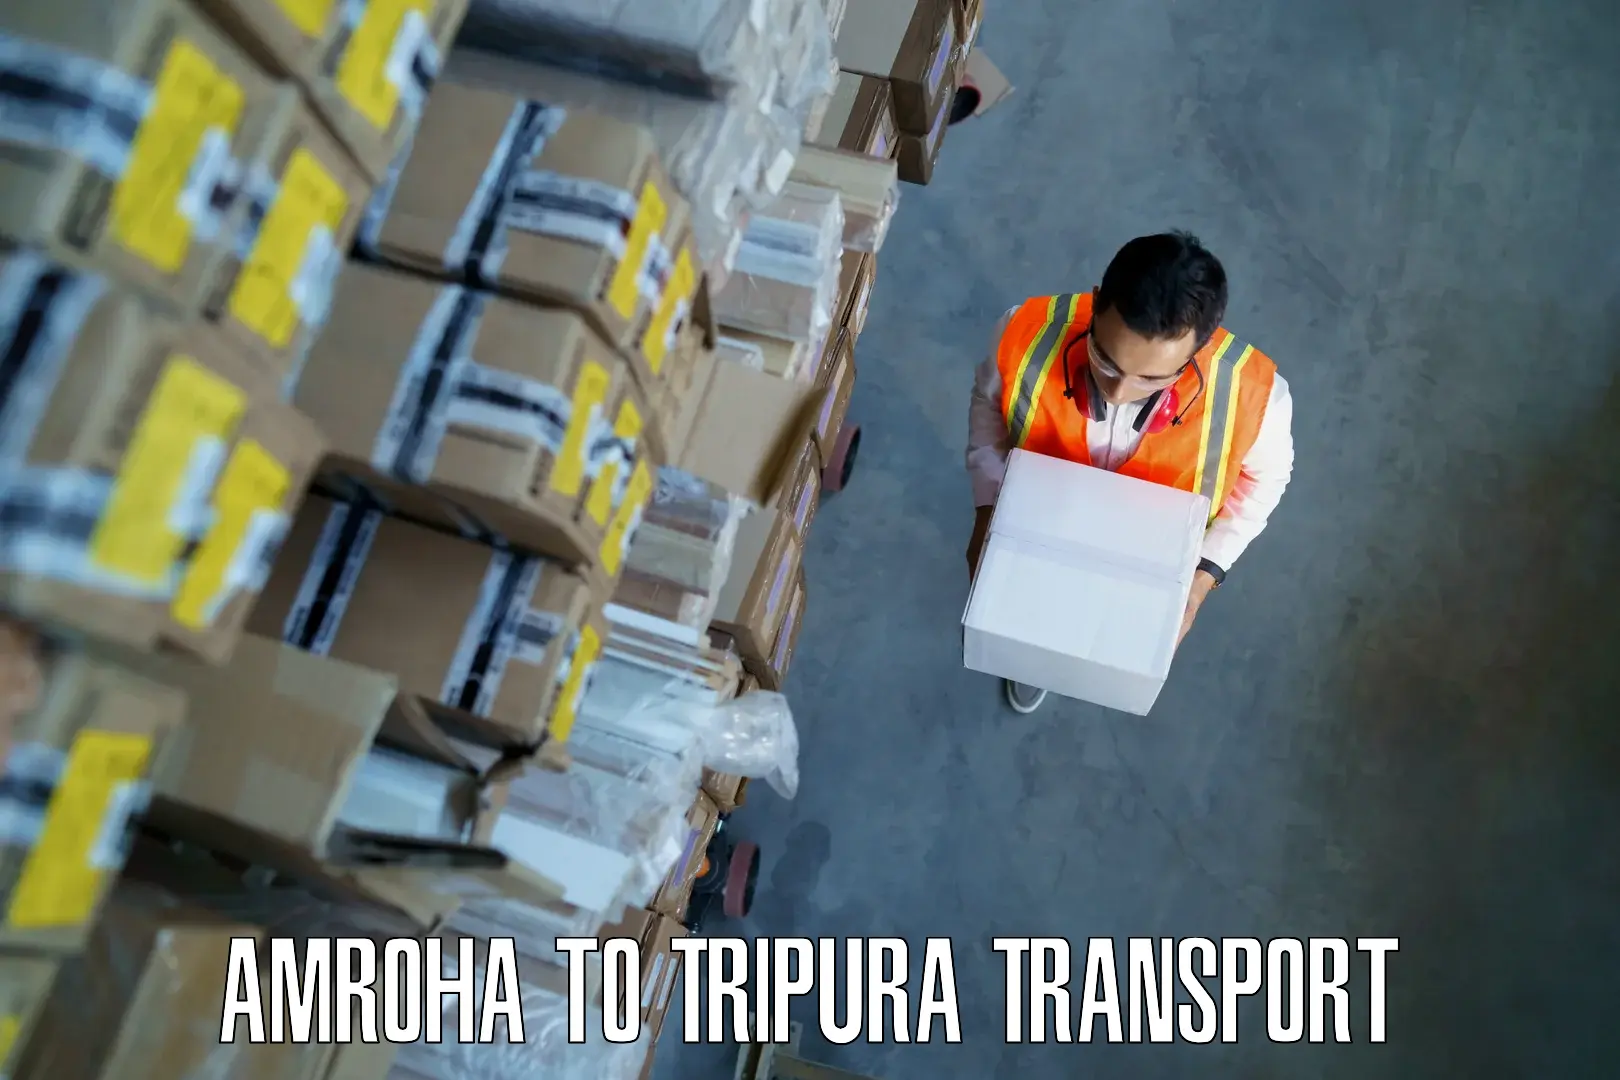 Daily parcel service transport Amroha to Manu Bazar